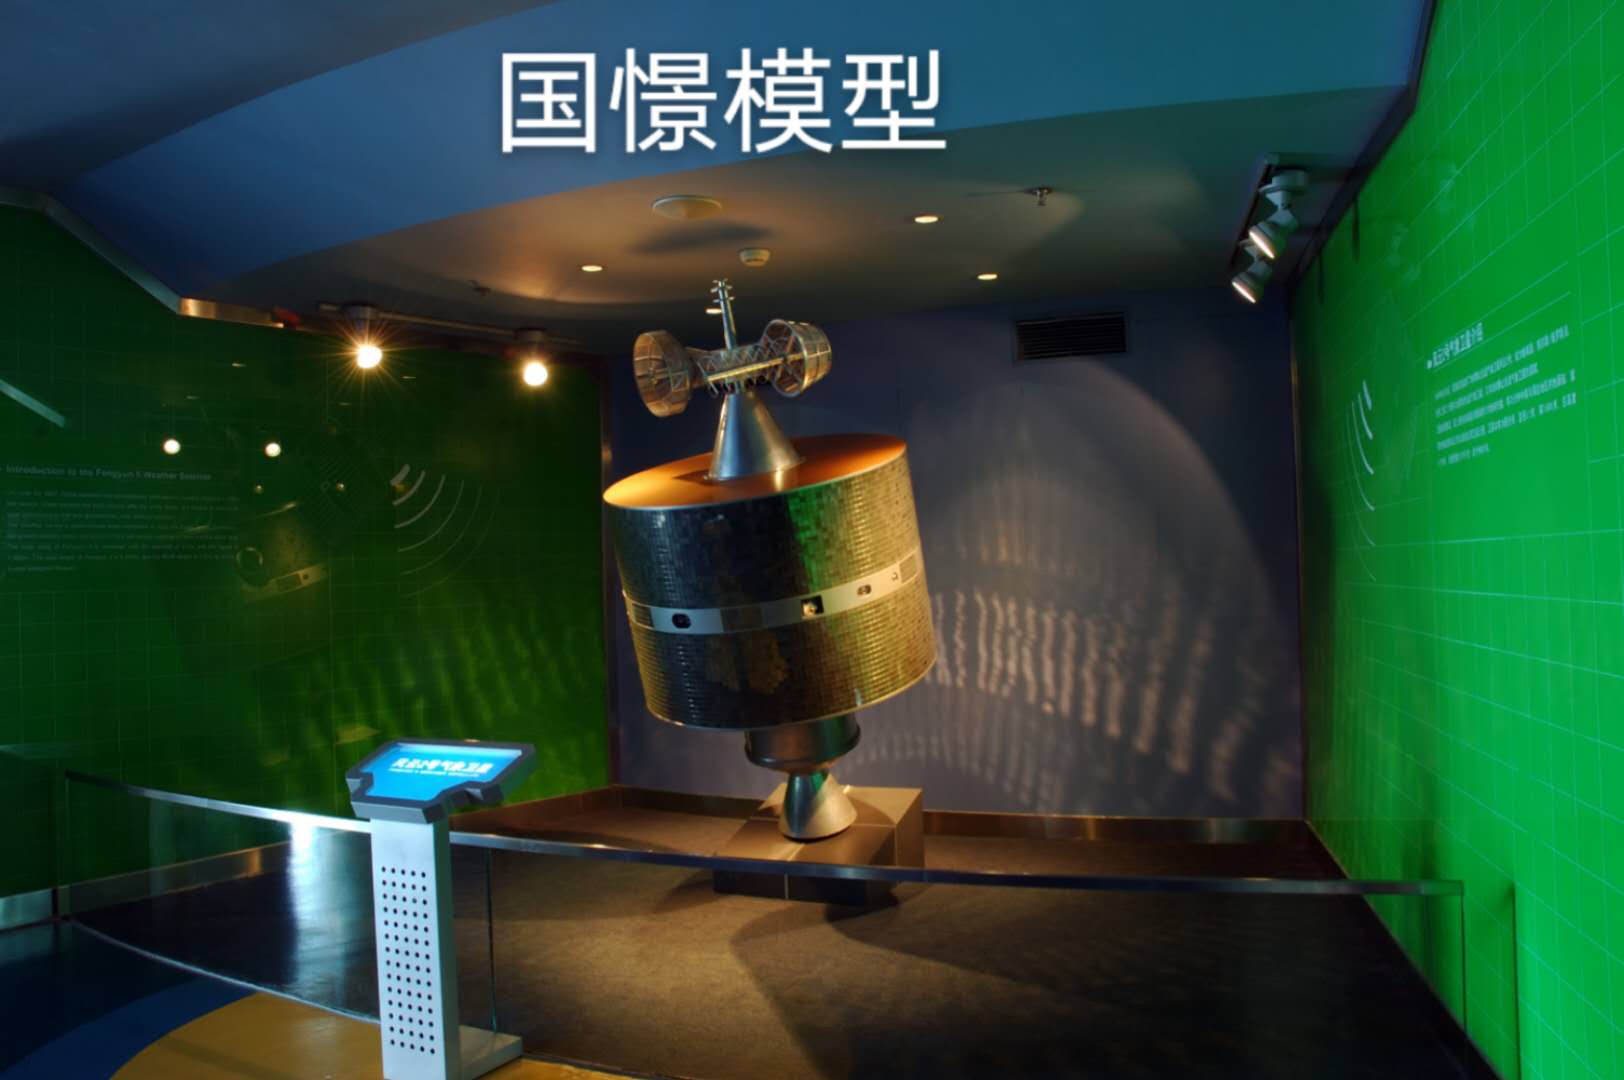 嘉禾县航天模型